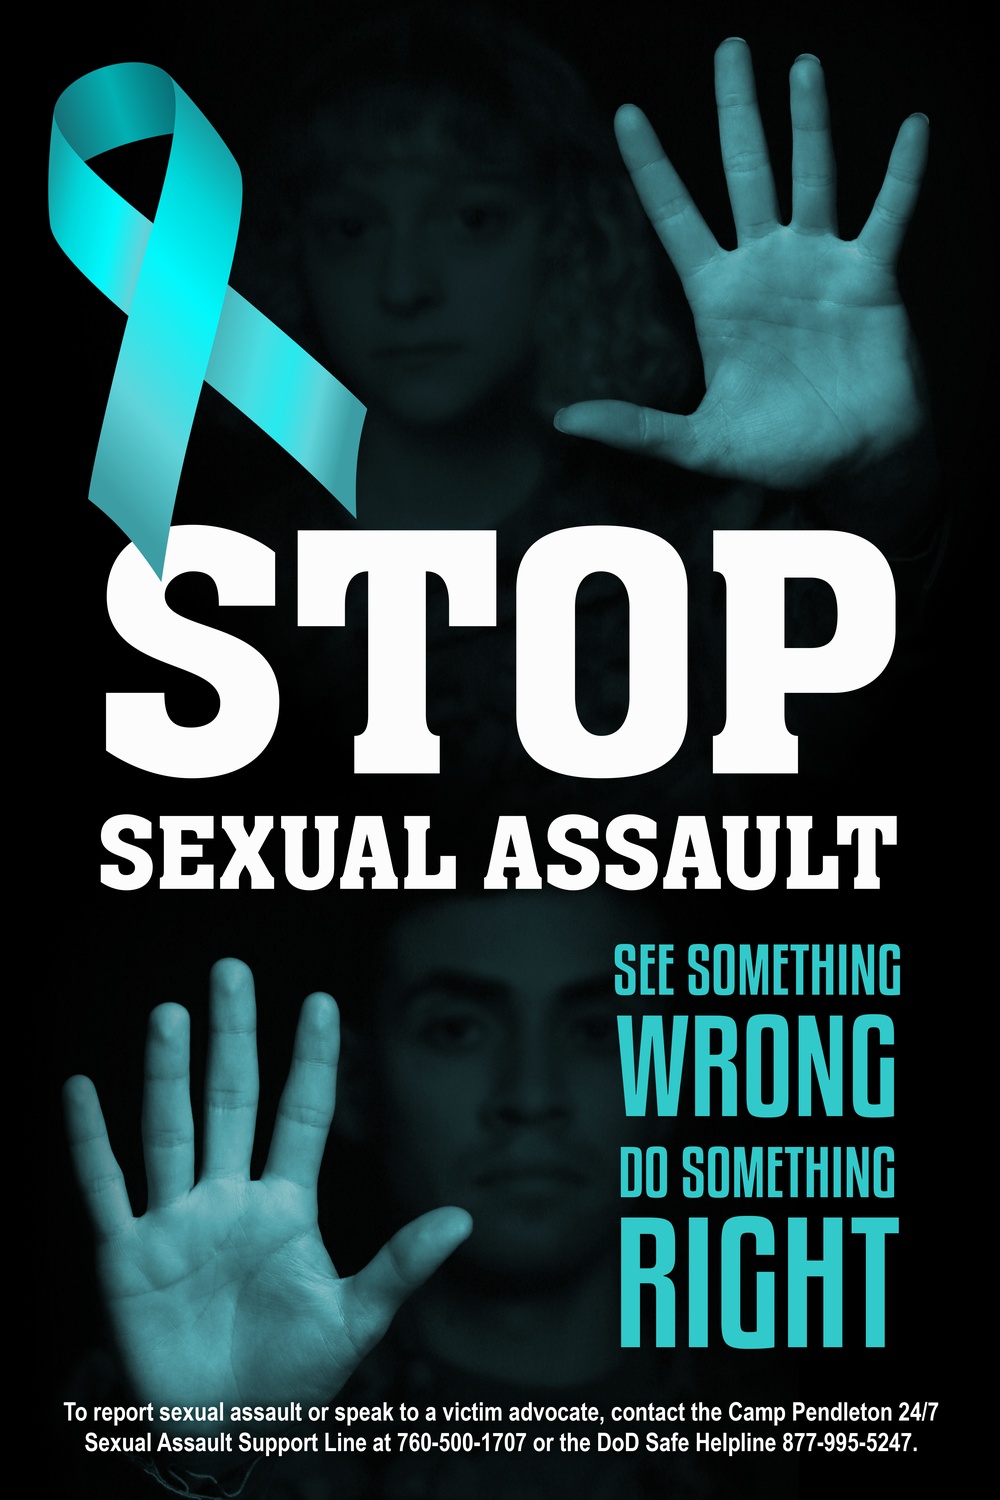 Sexual Assault Awareness: Stop